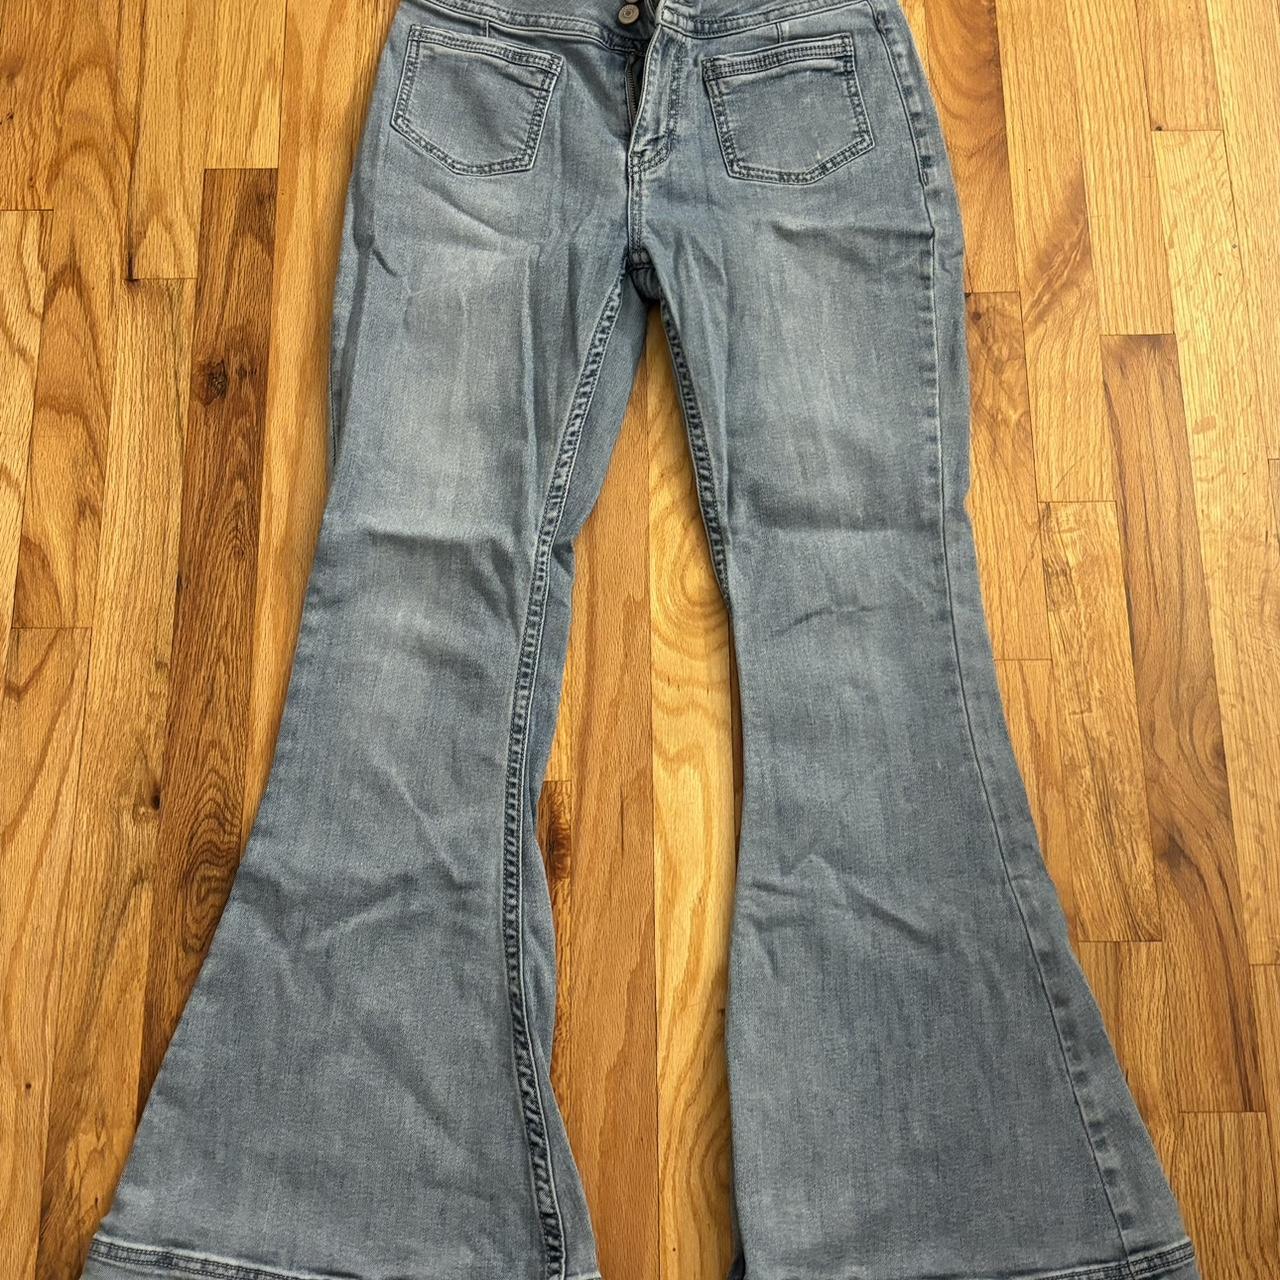 Shyanne flared jeans. Worn a few times. Size 31 short. - Depop